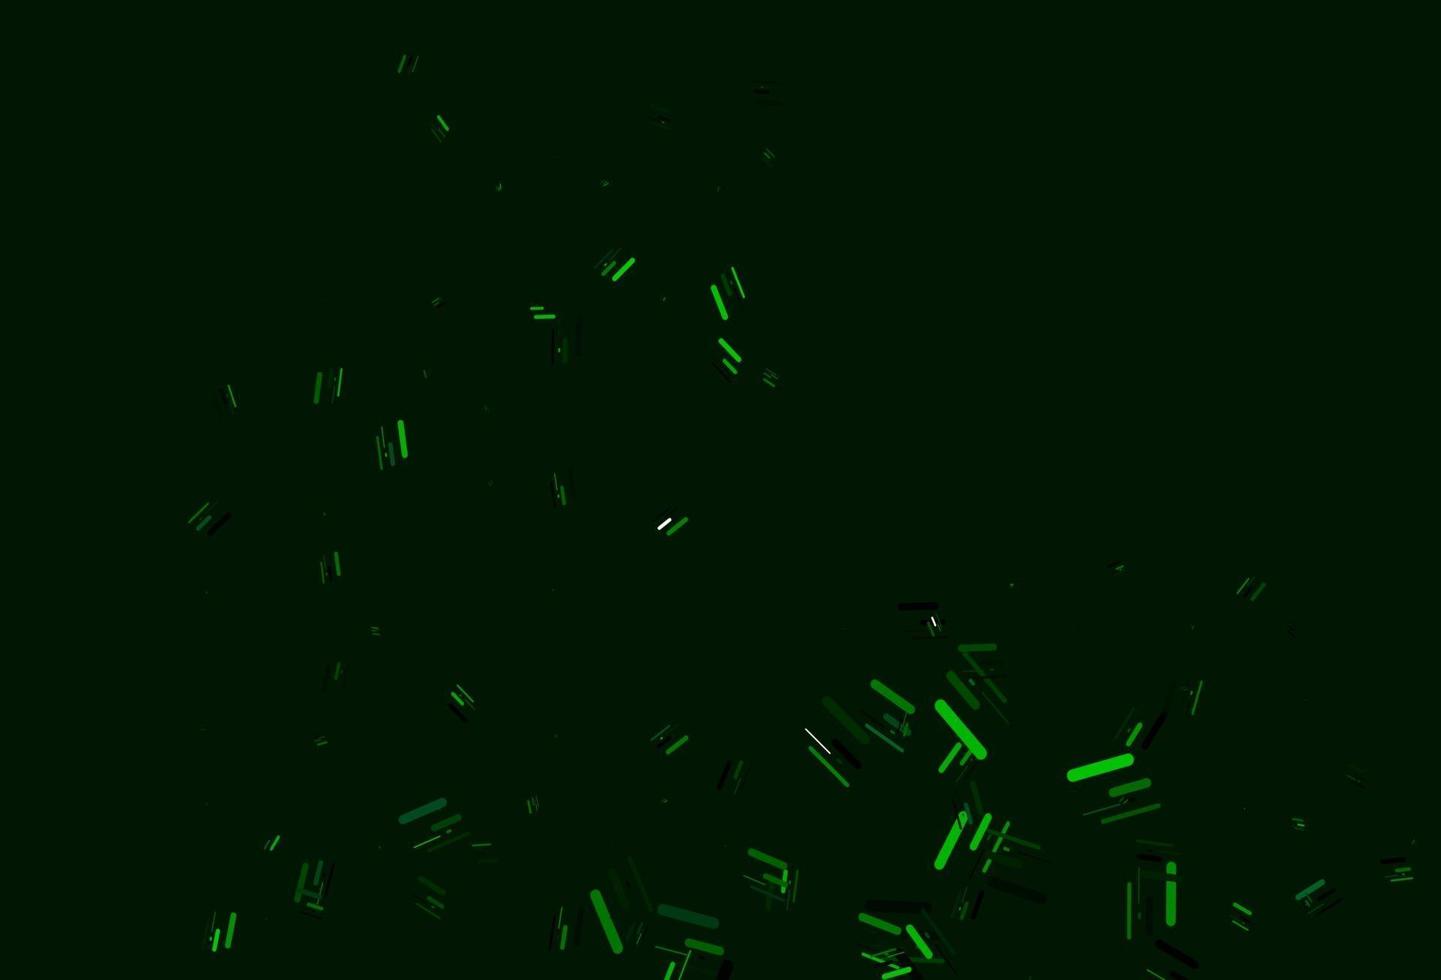 modello vettoriale verde chiaro con bastoncini ripetuti.